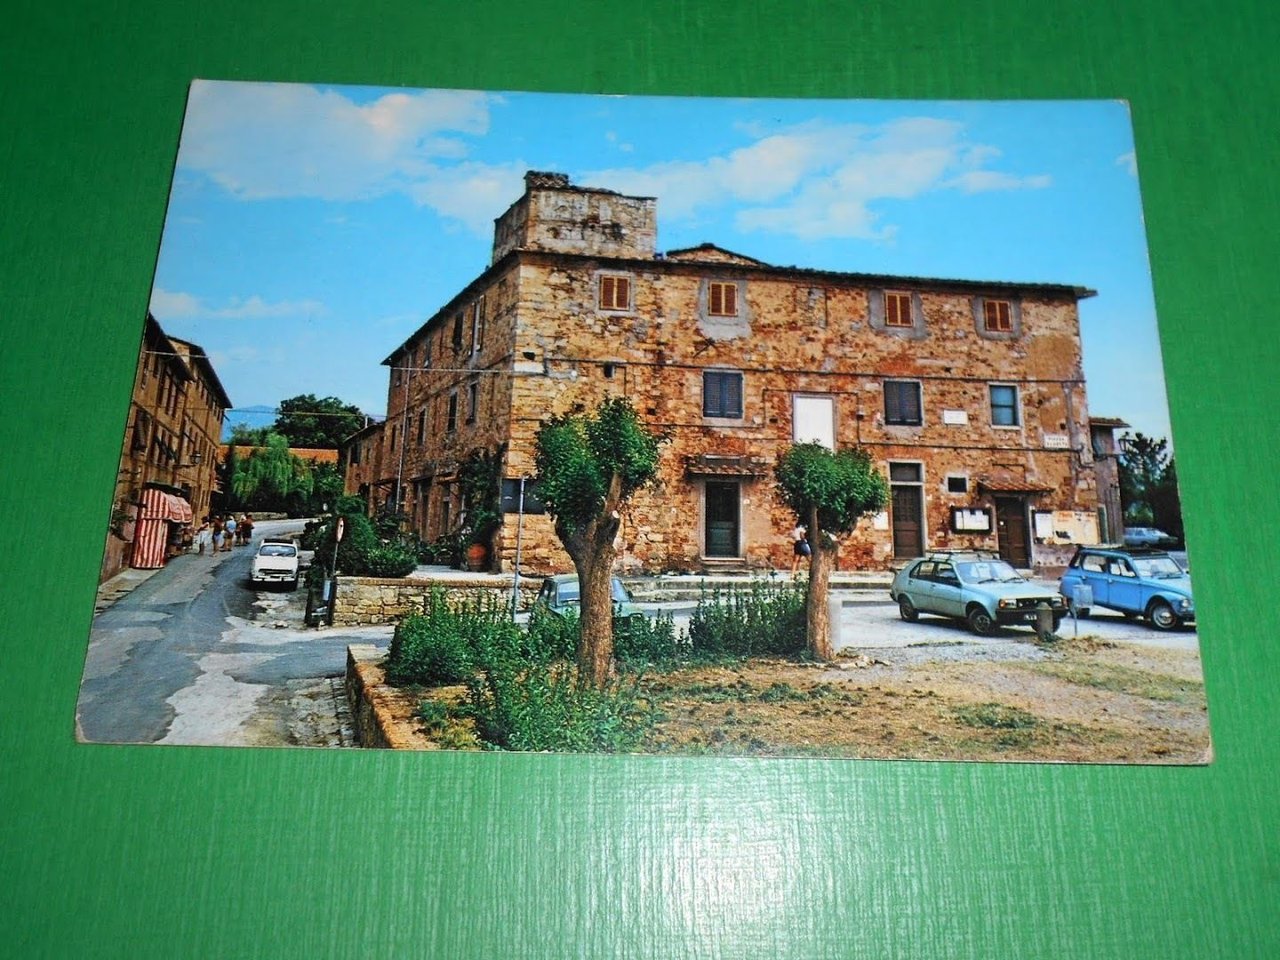 Cartolina Bolgheri ( Livorno ) - Casa del Carducci 1986.